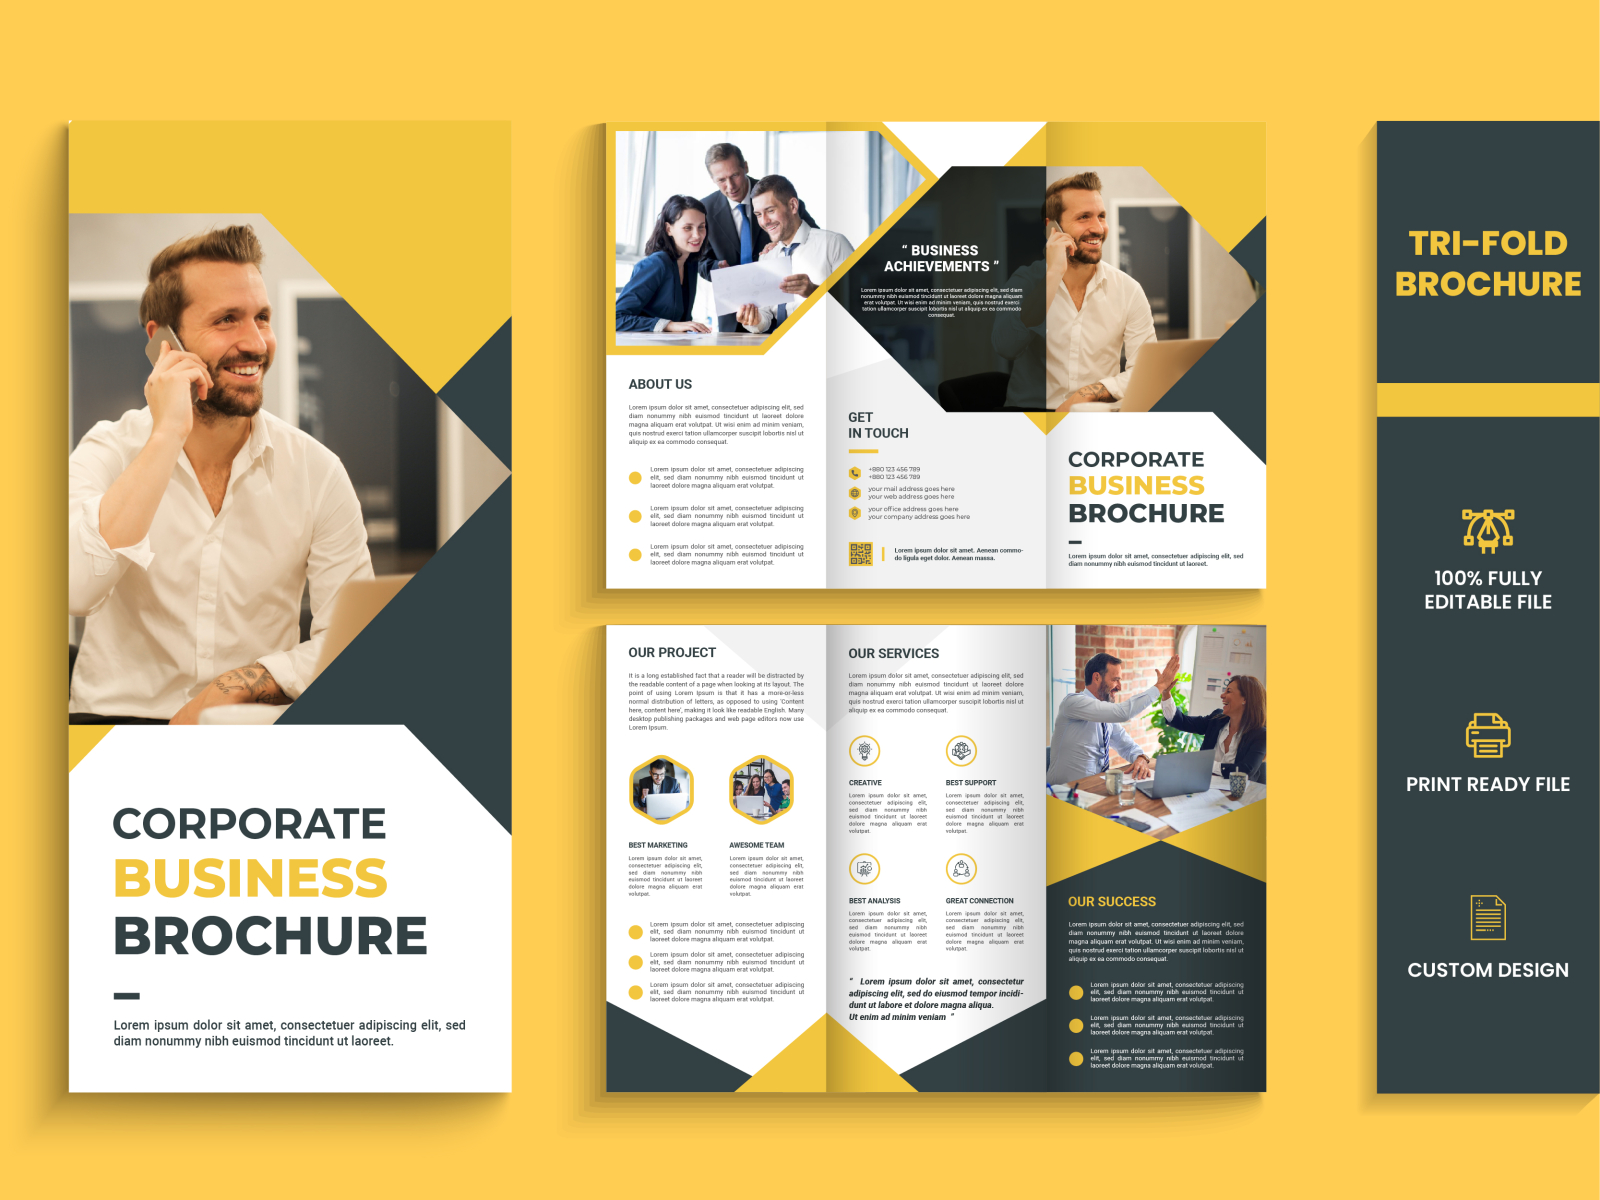 Tri fold brochure design | Corporate brochure design by Al Amin on Dribbble